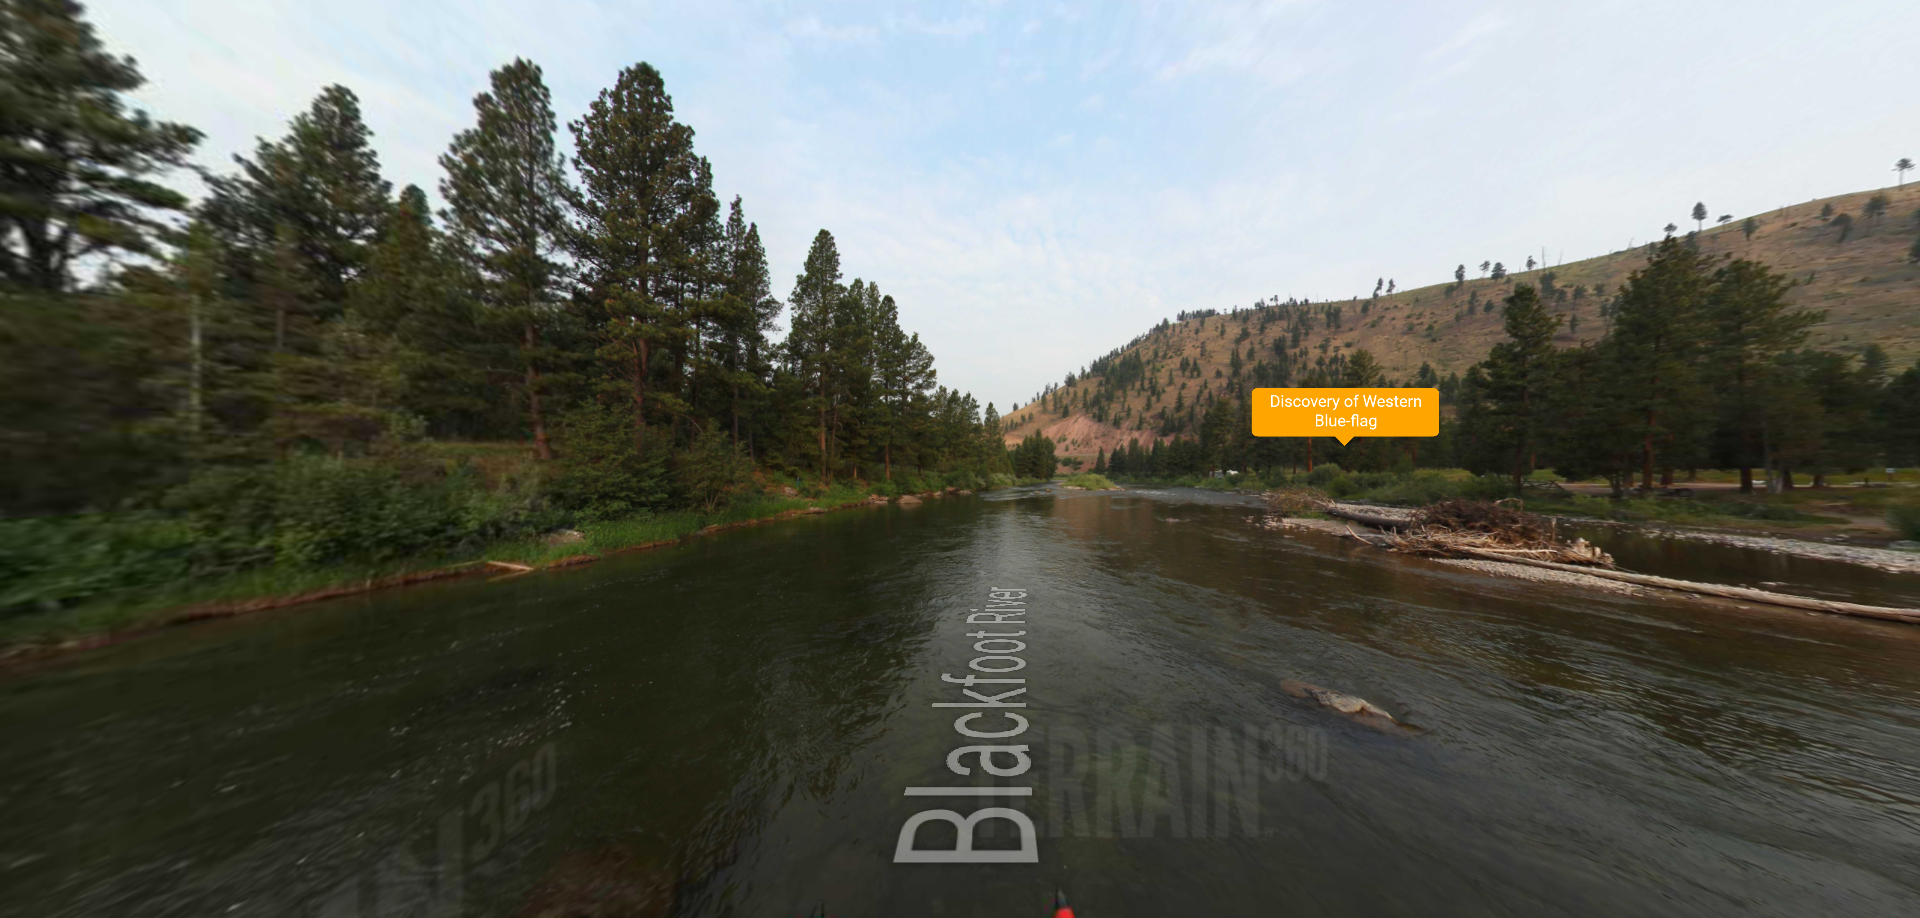 Blackfoot River Beginning